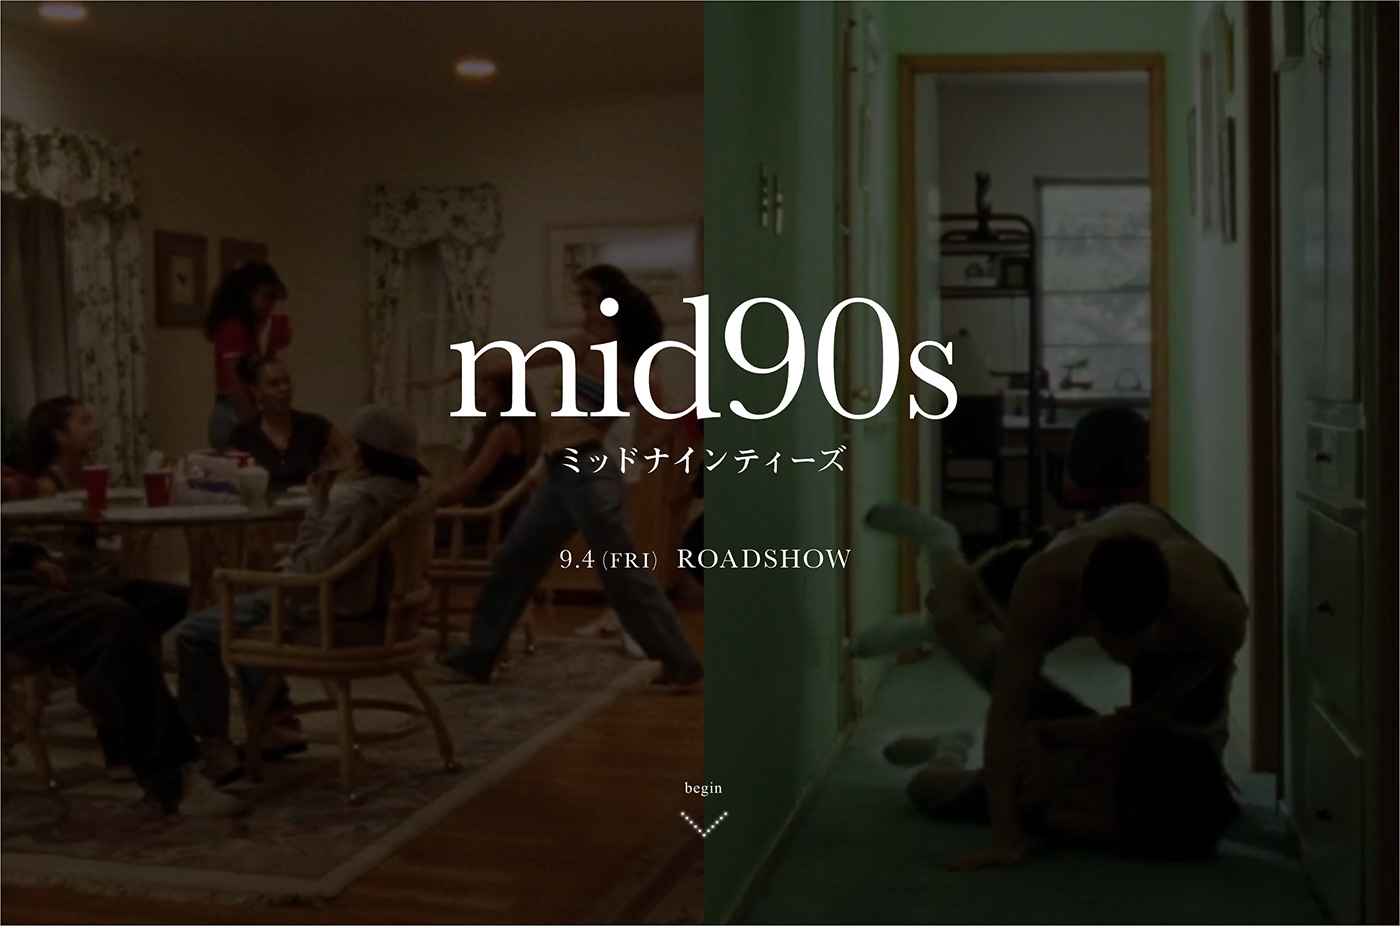 映画『mid90s ミッドナインティーズ』公式サイトウェブサイトの画面キャプチャ画像